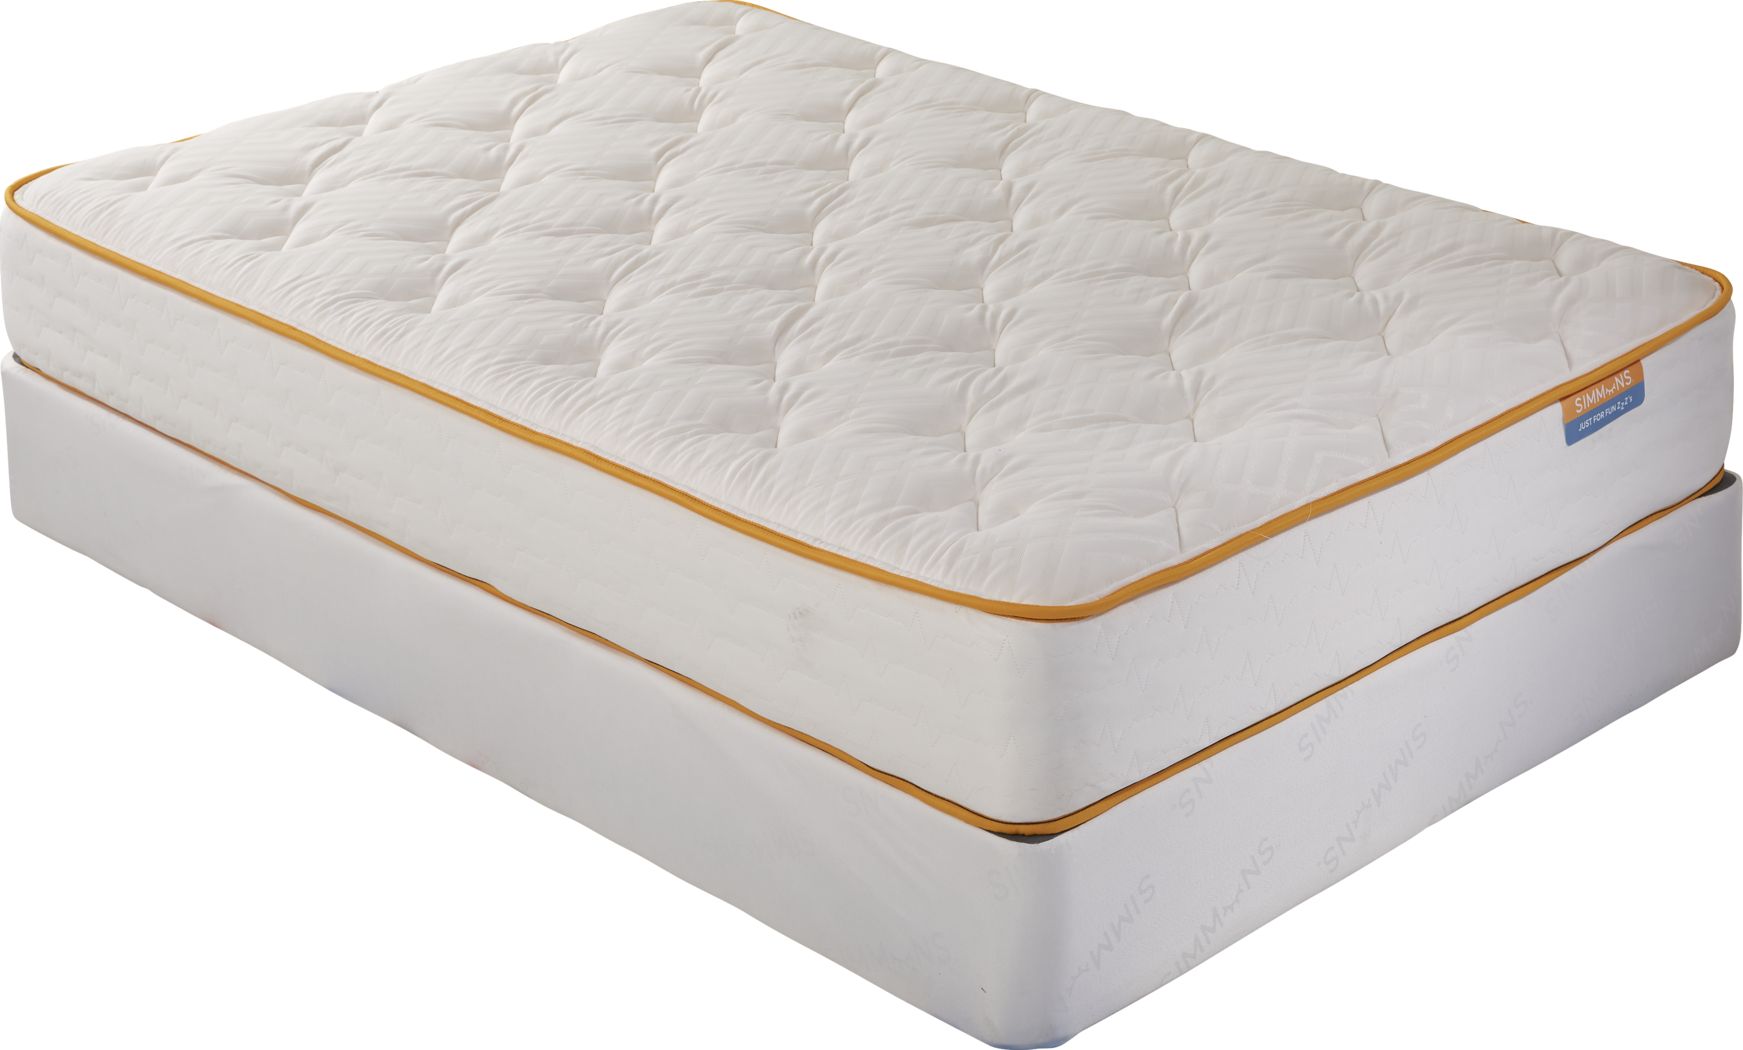 full mattress sale under $100